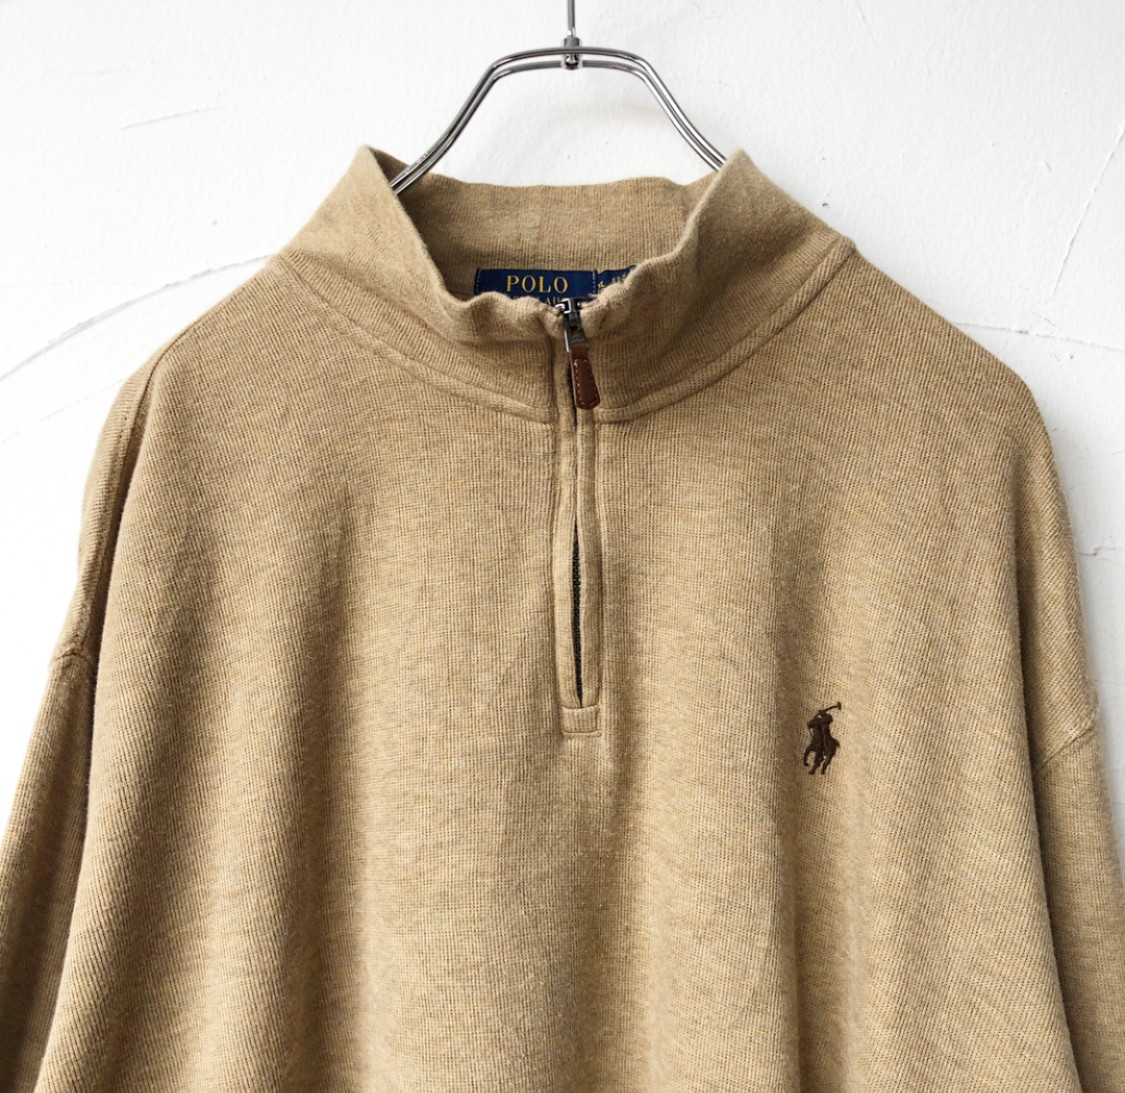 "Polo Ralph Lauren" half zip sweat shirt